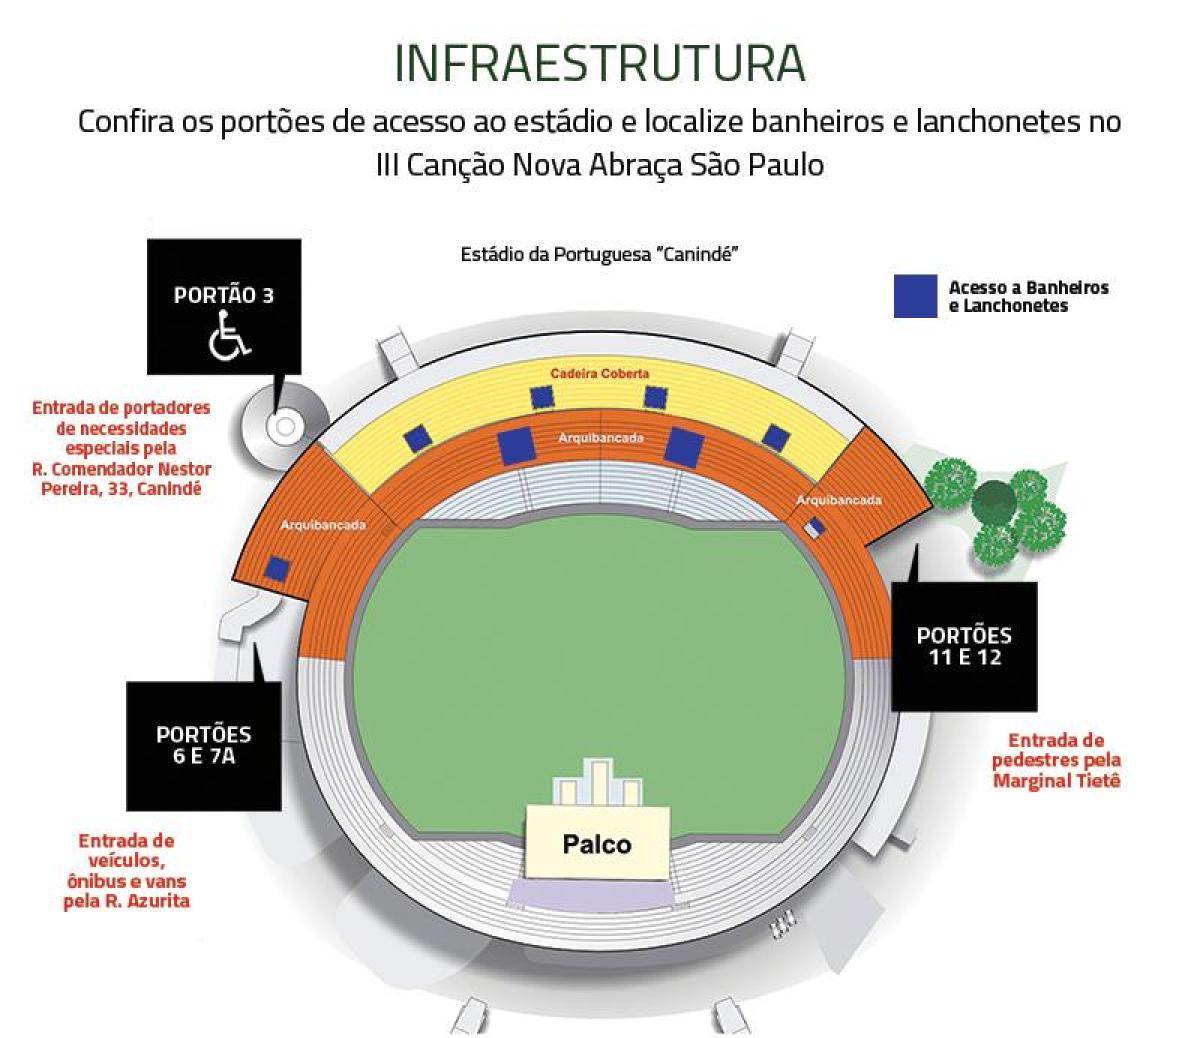 نقشه کنیند ورزشگاه سن پائولو